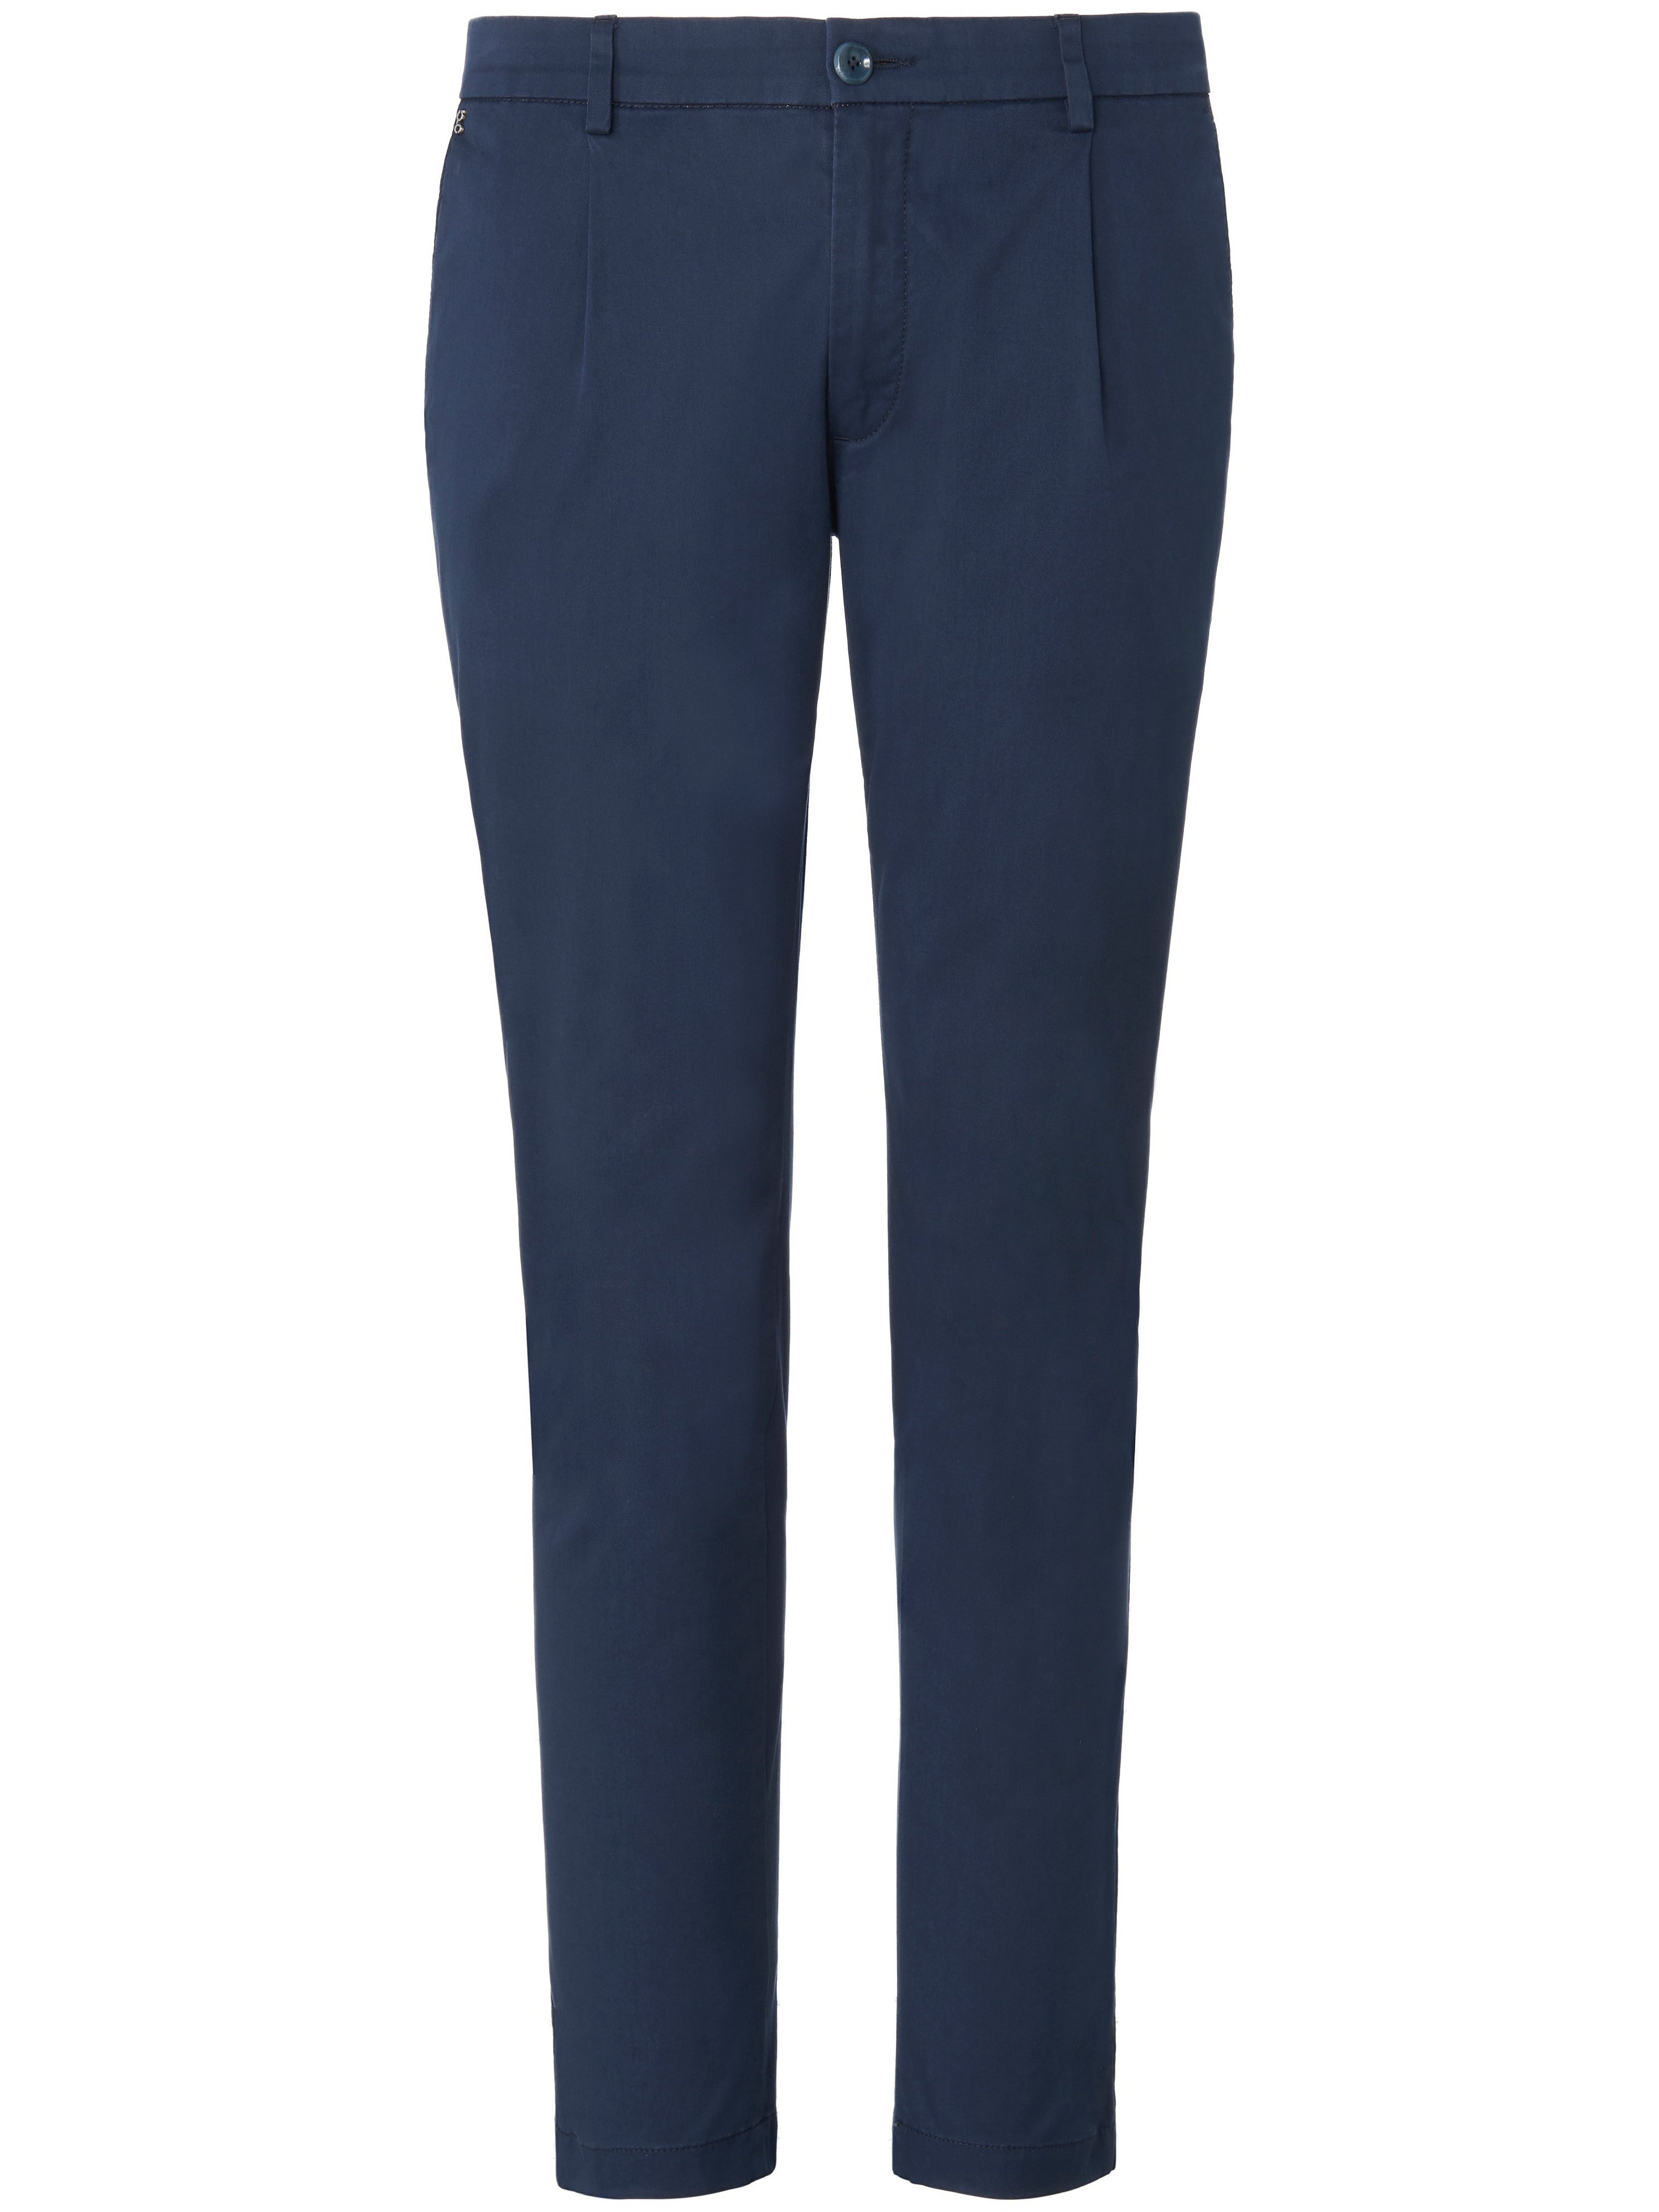 Le pantalon à pinces modèle Sergio  gardeur bleu taille 42